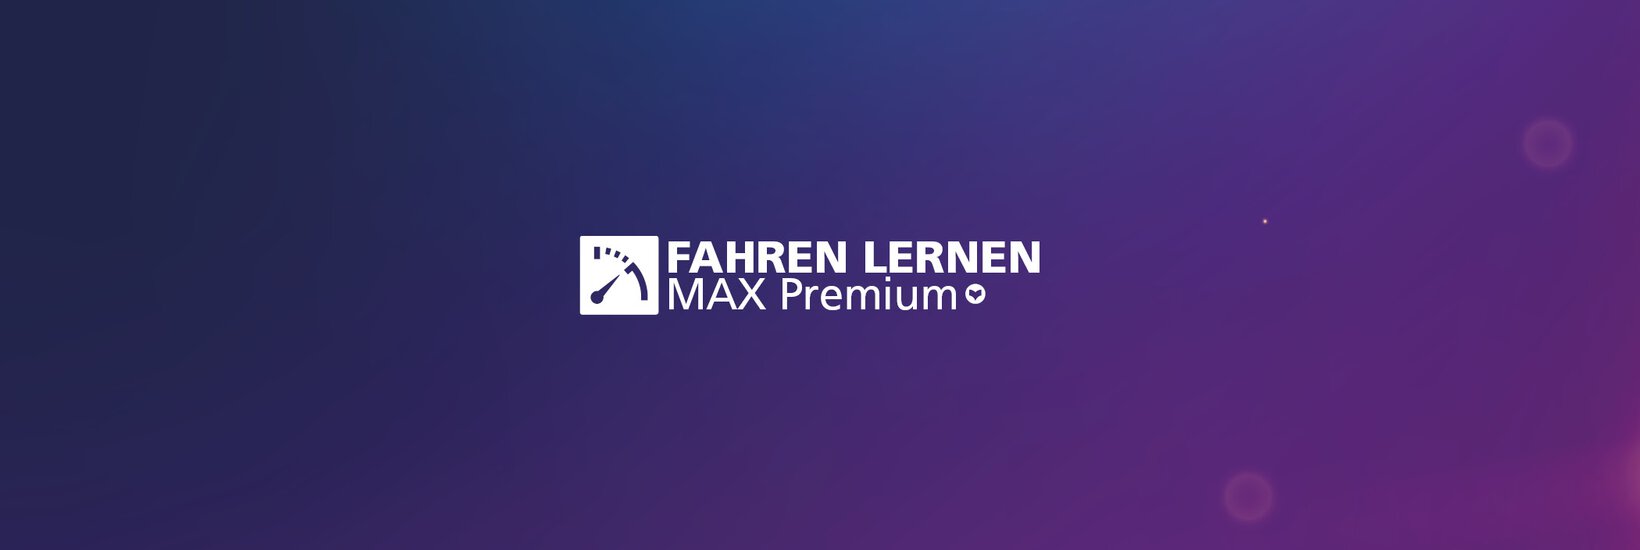 Fahren Lernen Max Premium Logo vor violetten Hindergrund